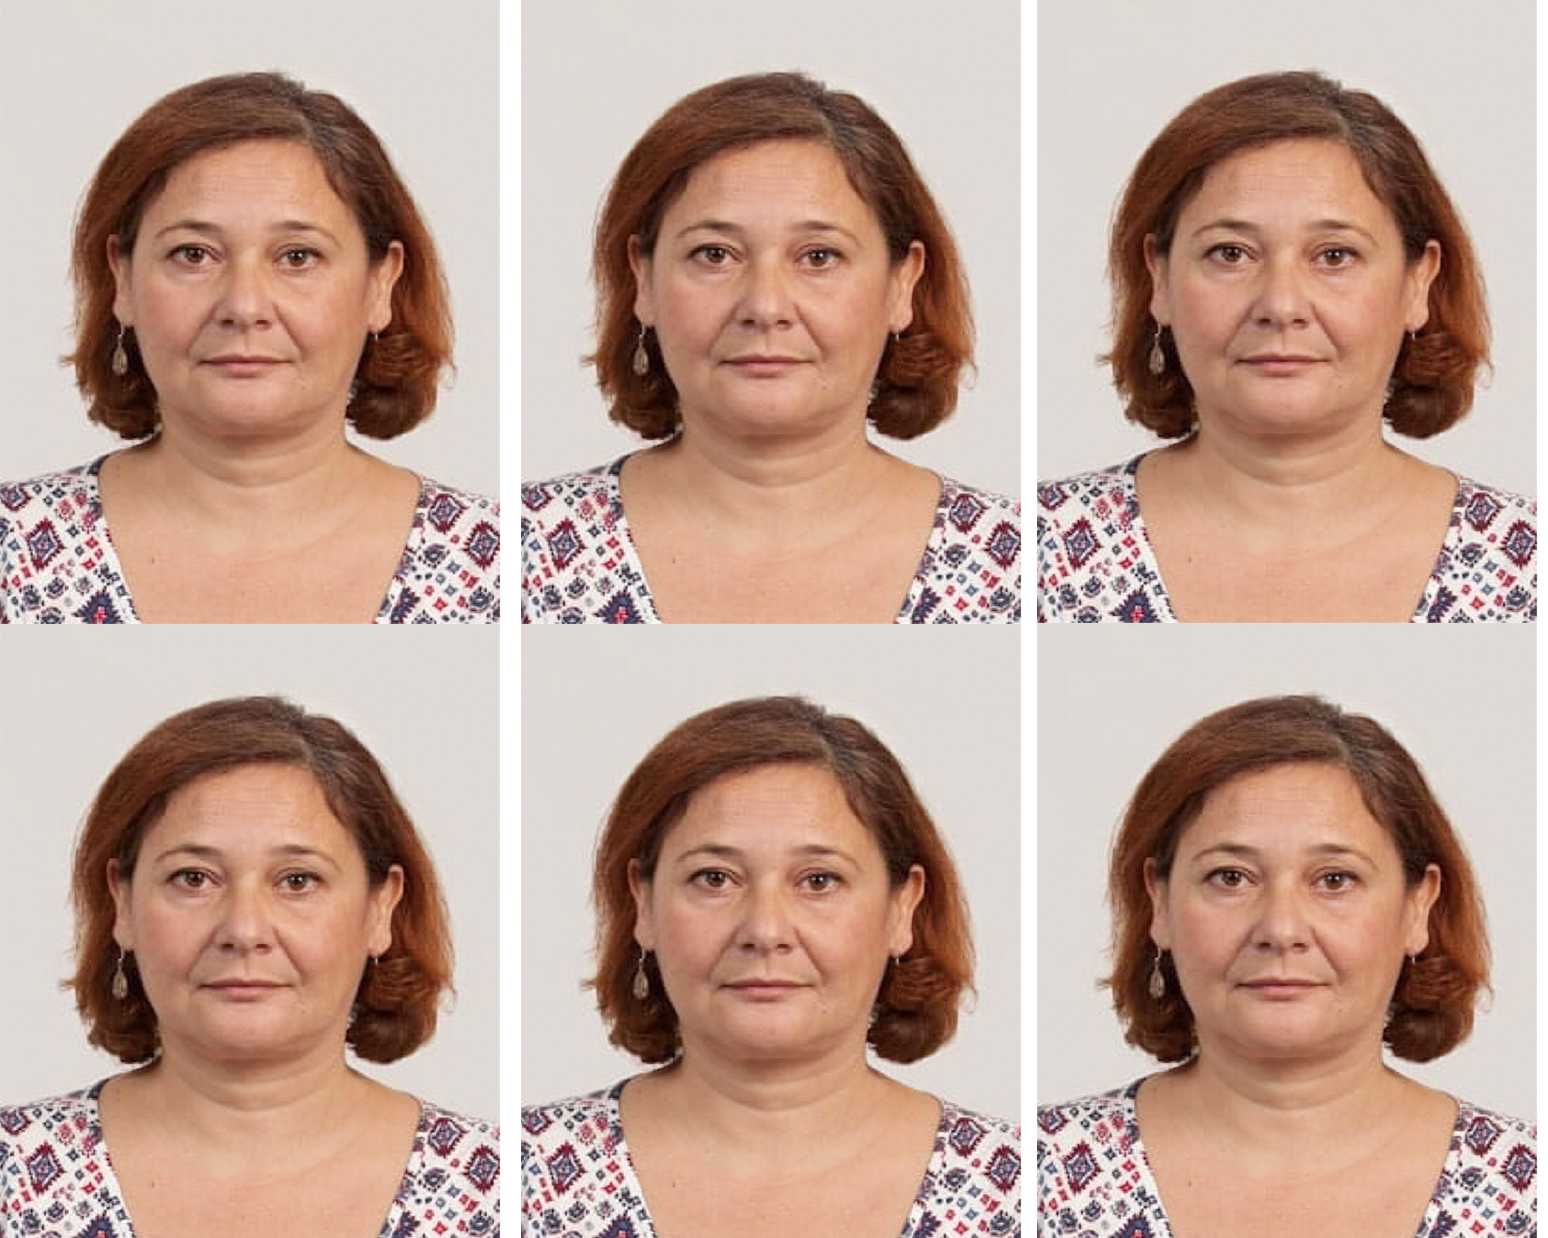 фото на паспорт 45 лет женщины требования